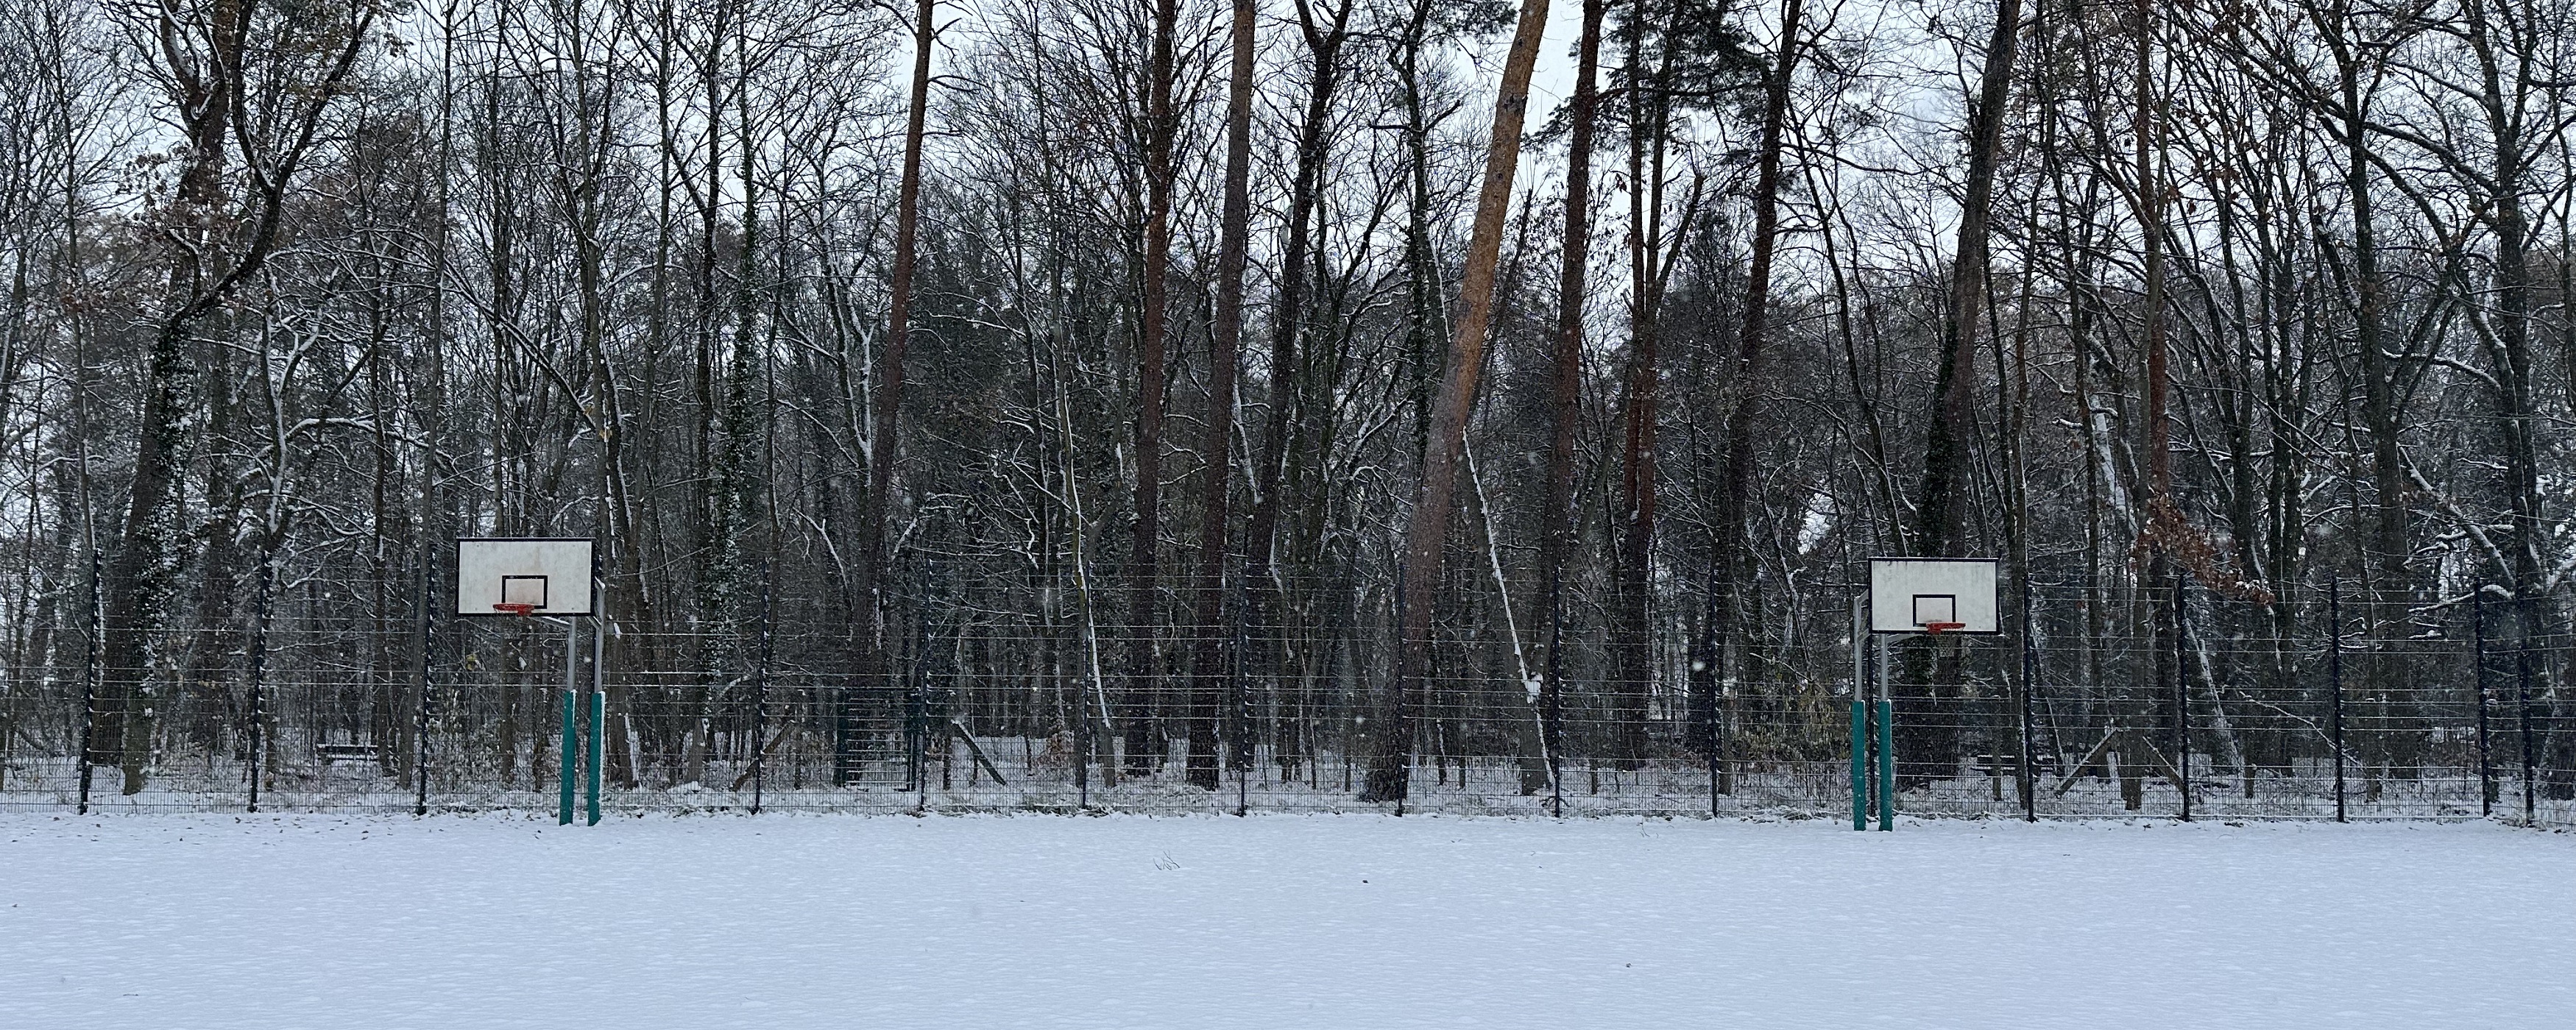 Bild: Sportplatz im Wald mit Schnee bedeckt